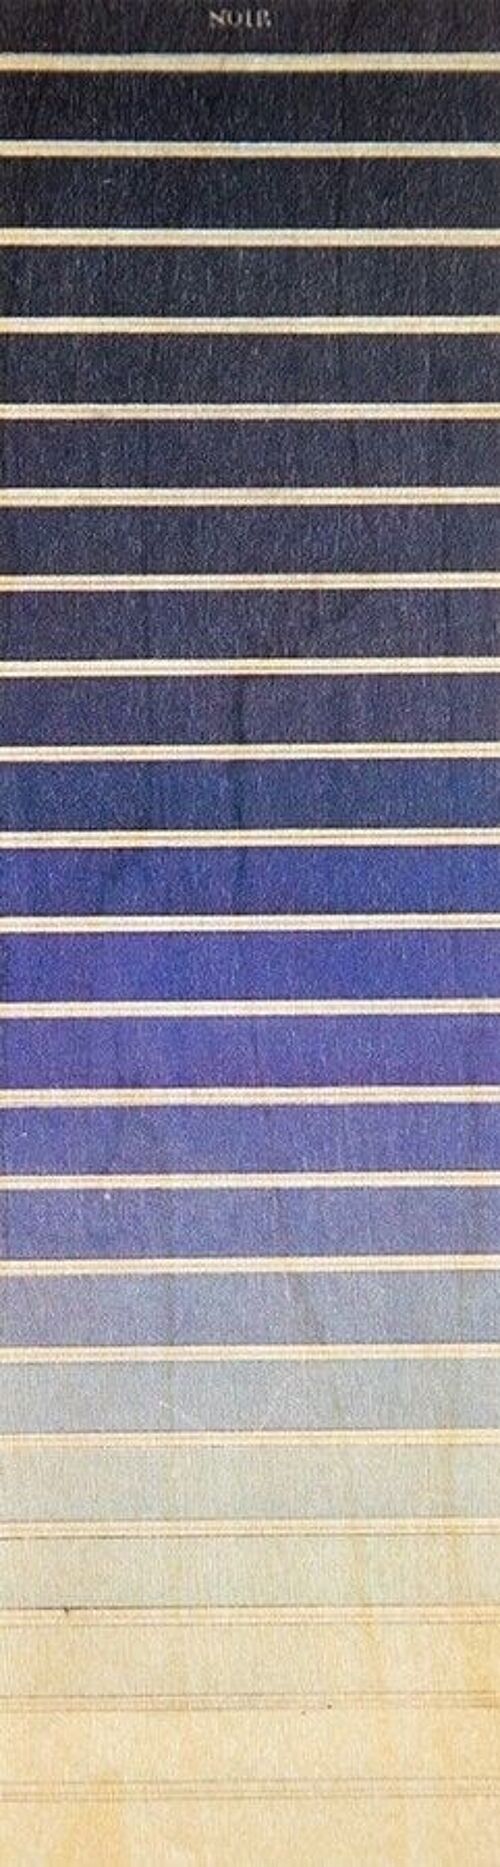 Marque-pages en bois- dégradé couleurs bleu